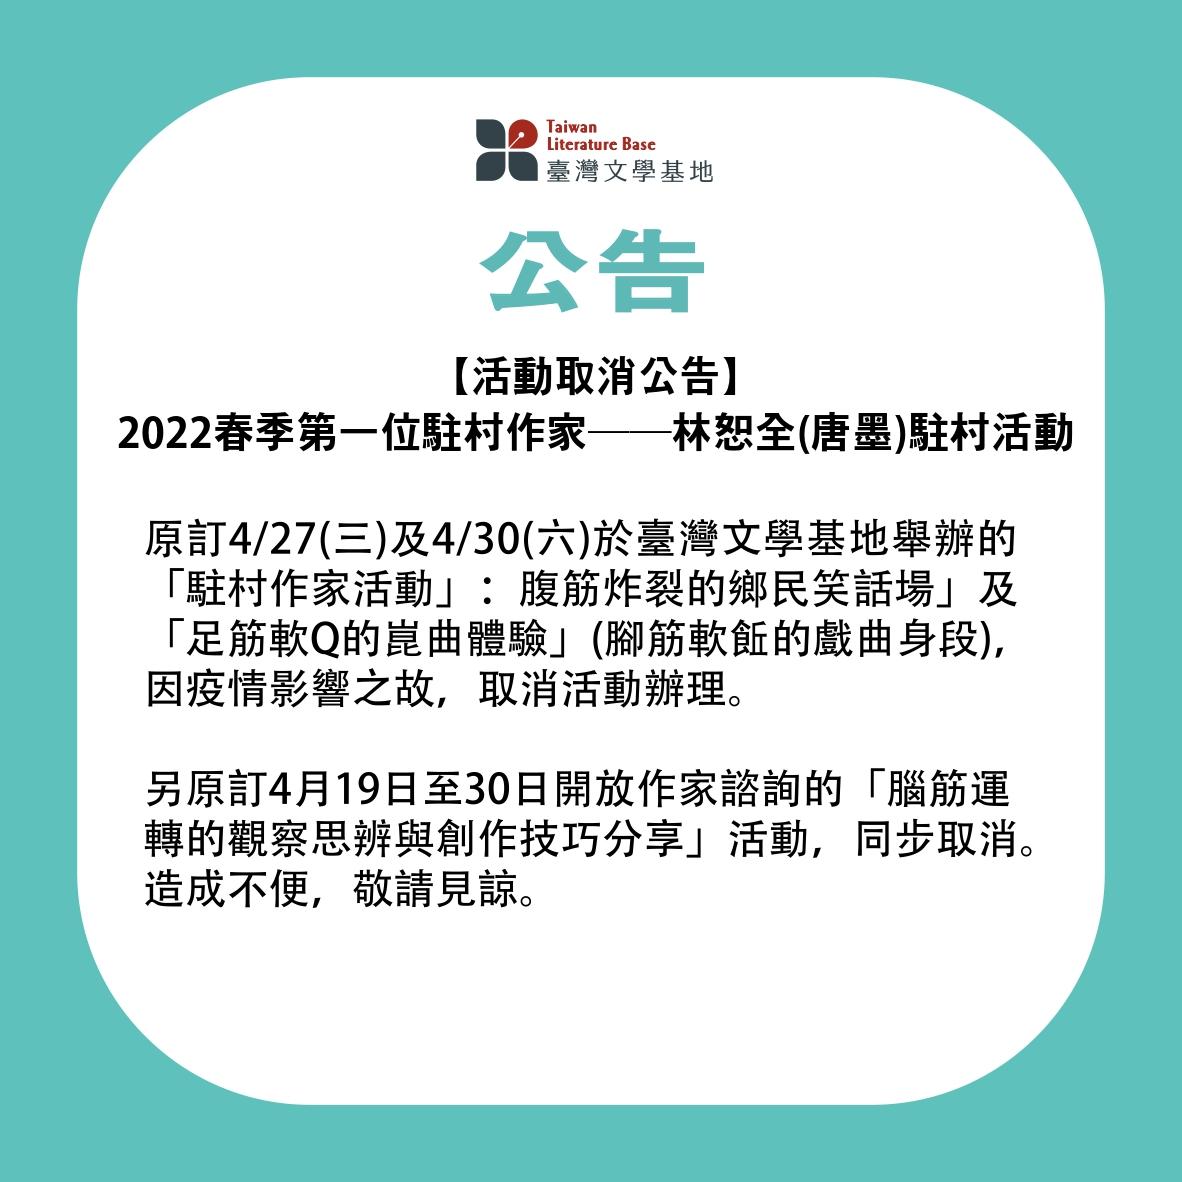 【活動取消公告】2022春季第一位駐村作家——林恕全(唐墨)駐村活動